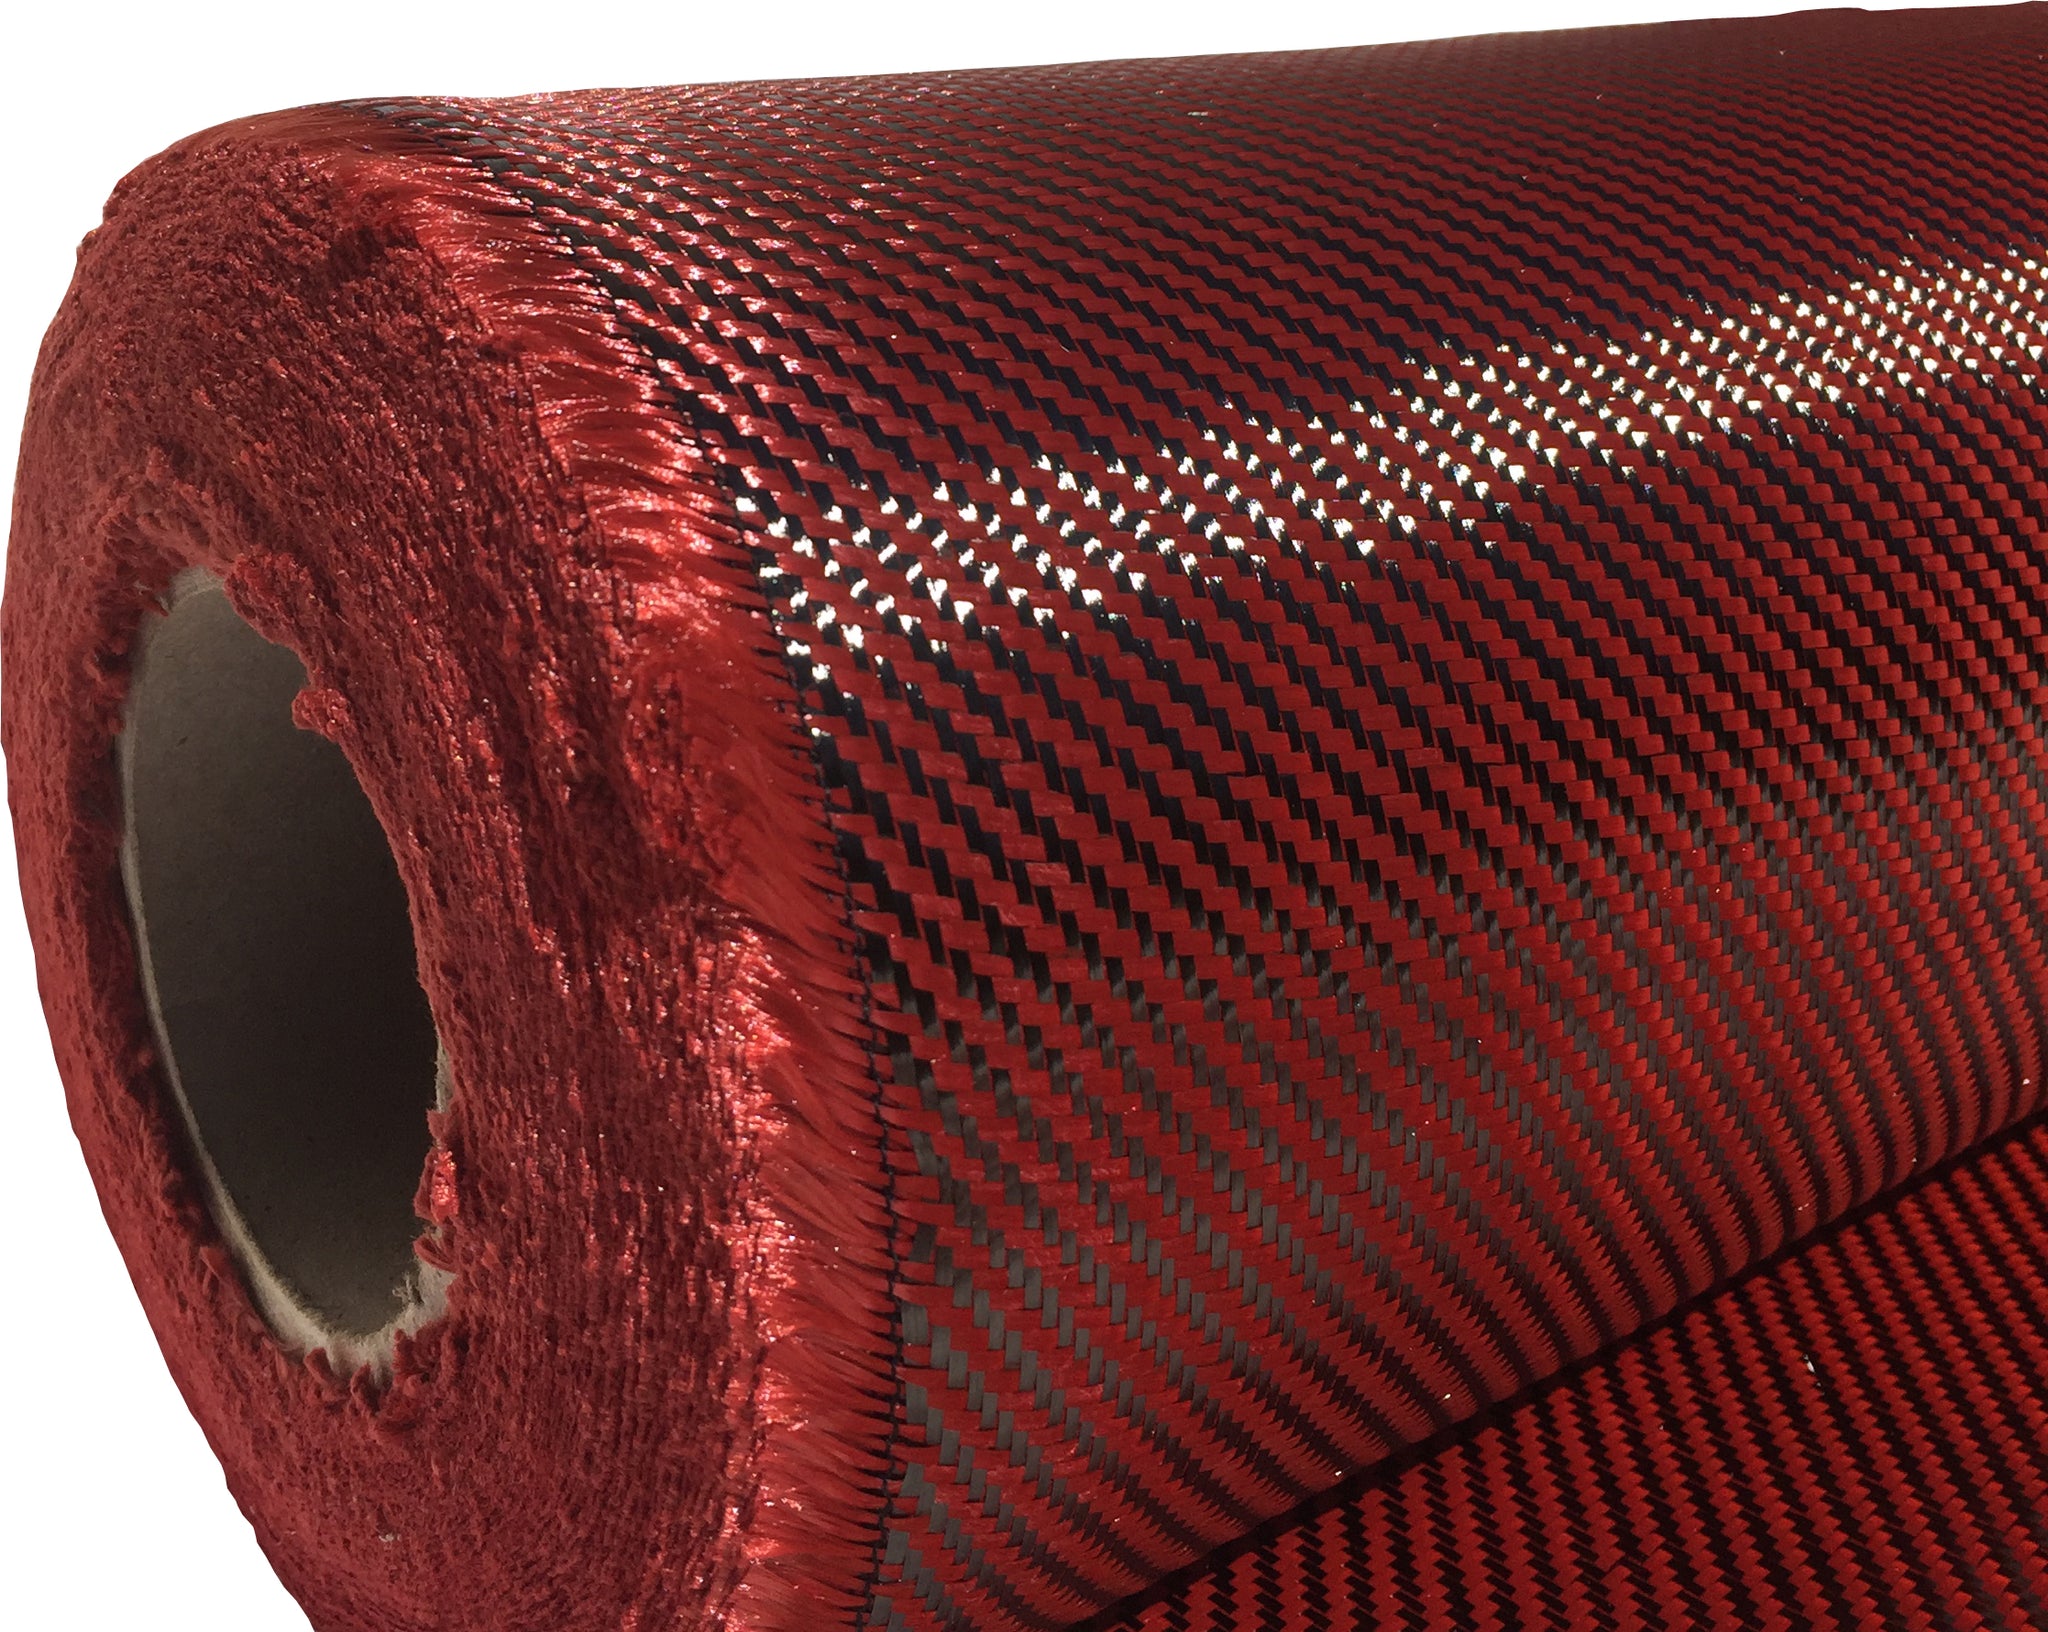 KEVLAR ARAMID Fabric - 1 meter x 25 ft - Twill - 240g/m2 - 3K TOW 